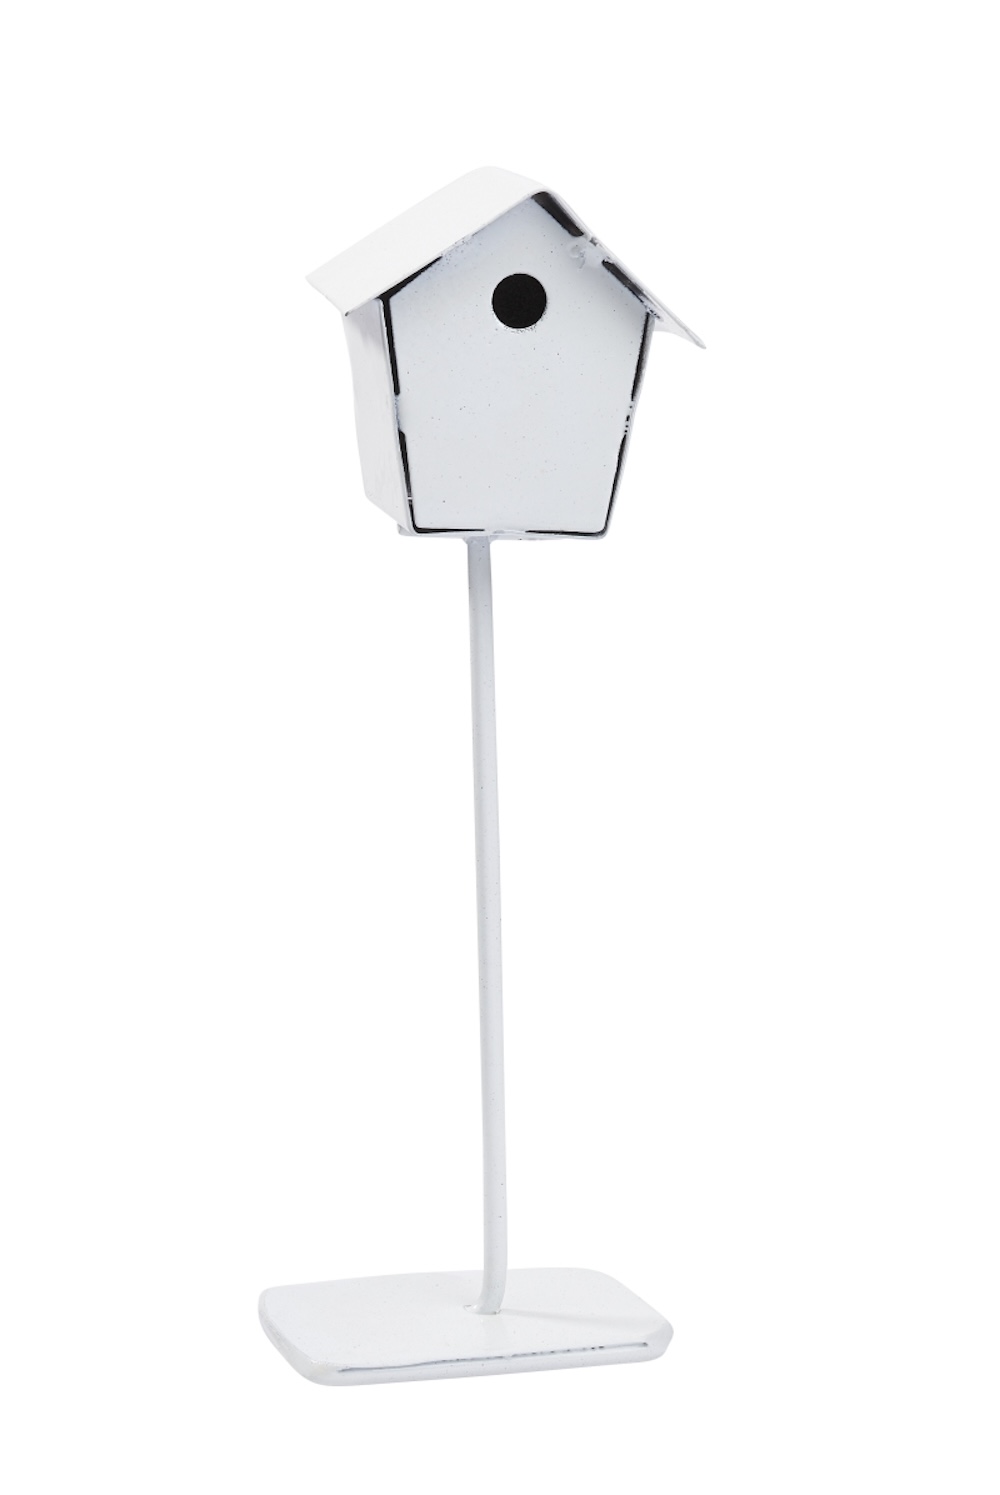 Miniatur Vogelhaus, 10cm weiß aus Metall für Wichteltür & Feengarten